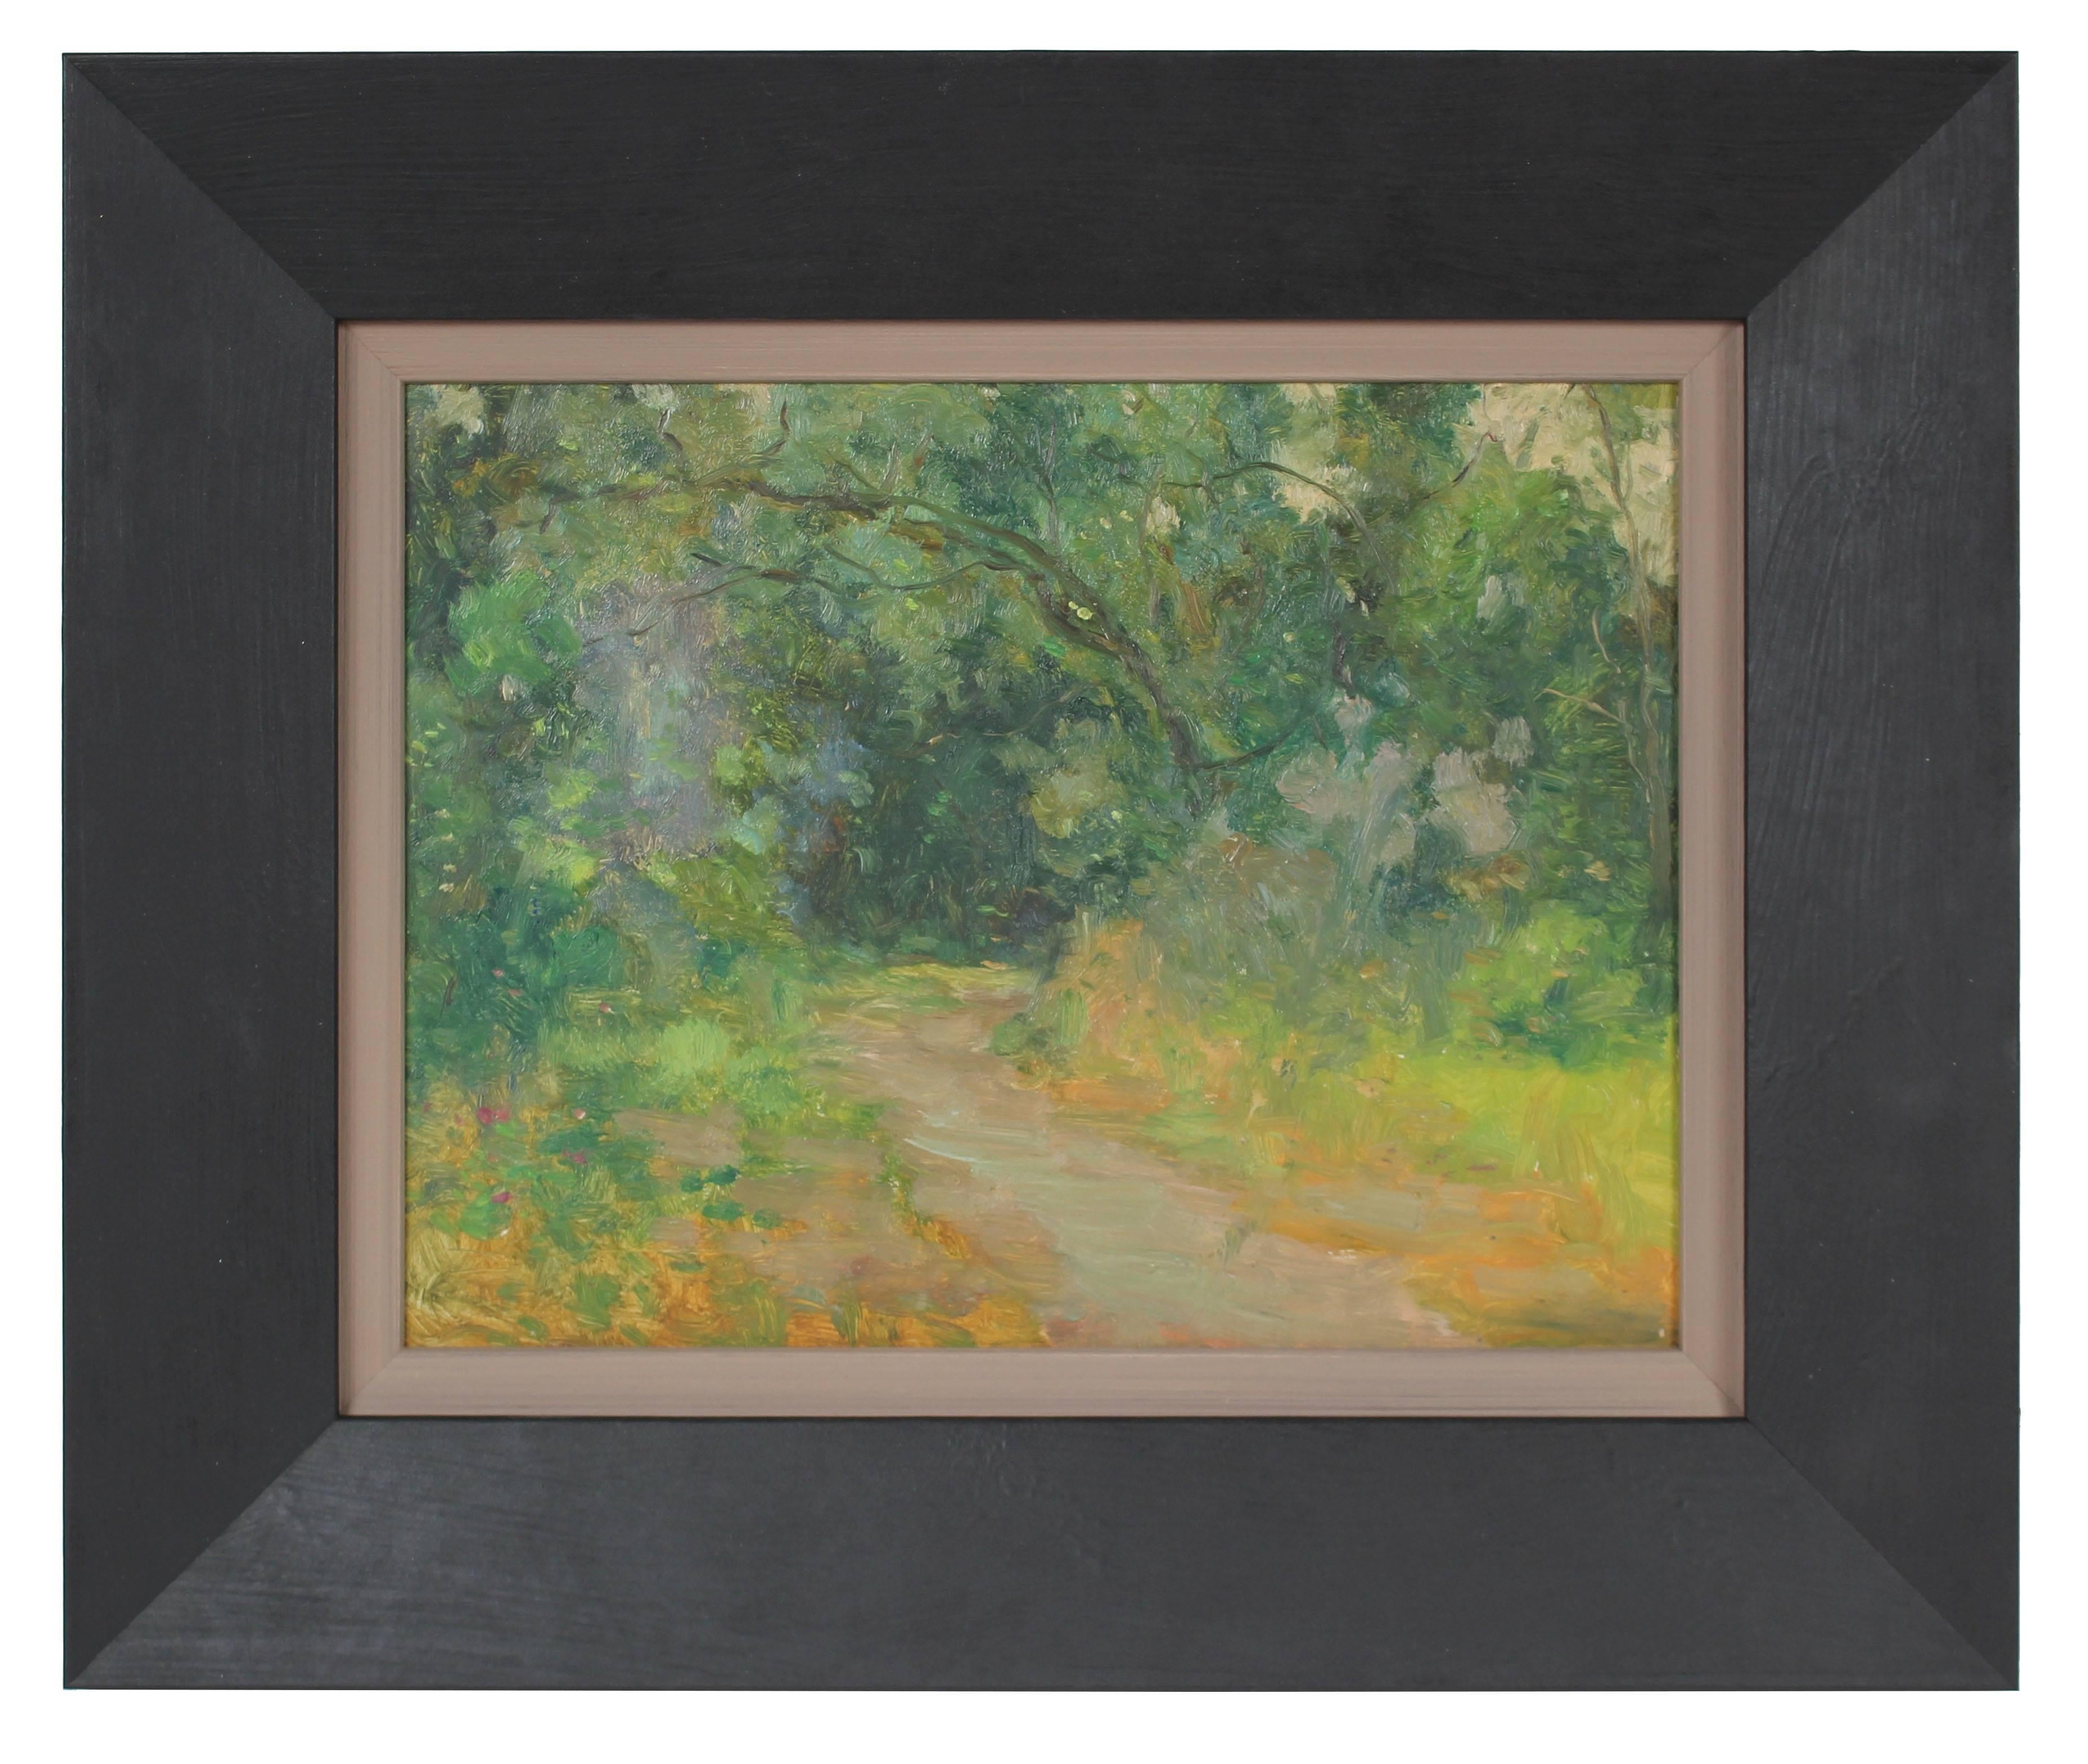 Duncan Davidson Landscape Painting - Lush Impressionist Landscape, Oil Painting, Circa 1920s